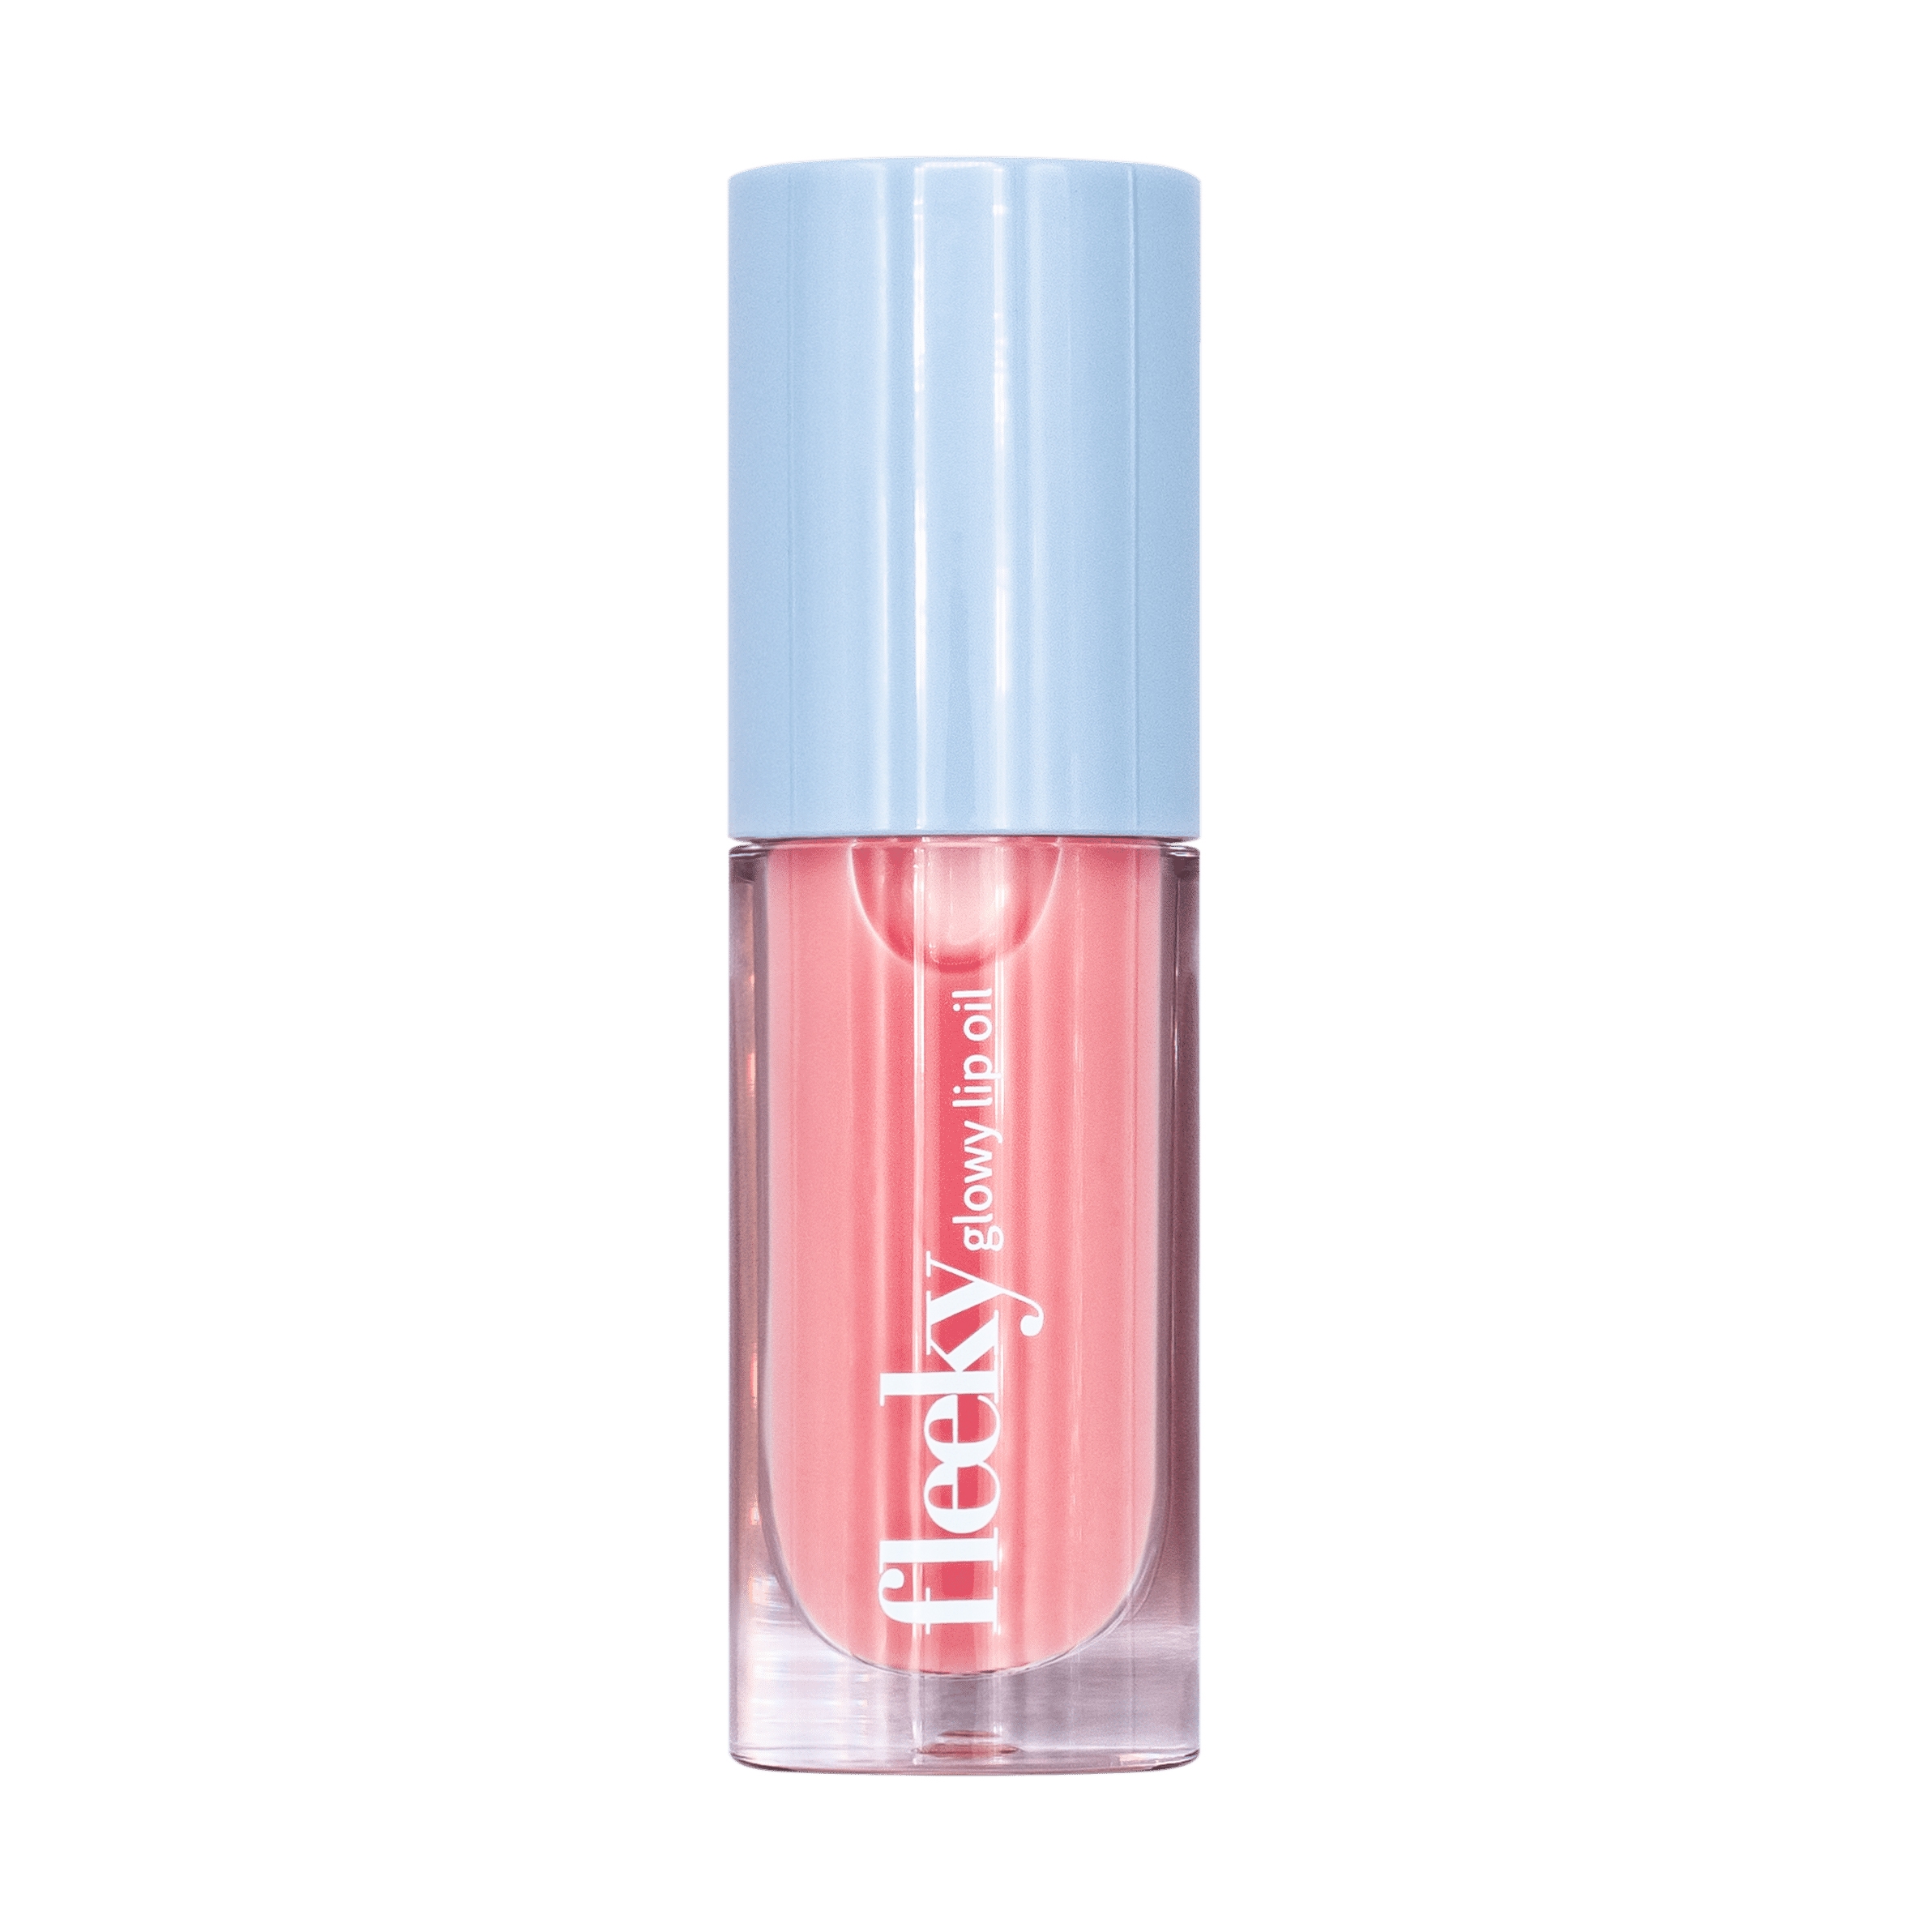 Produktbild von fleeky Lips - Glowy Lip Oil Peach Pink